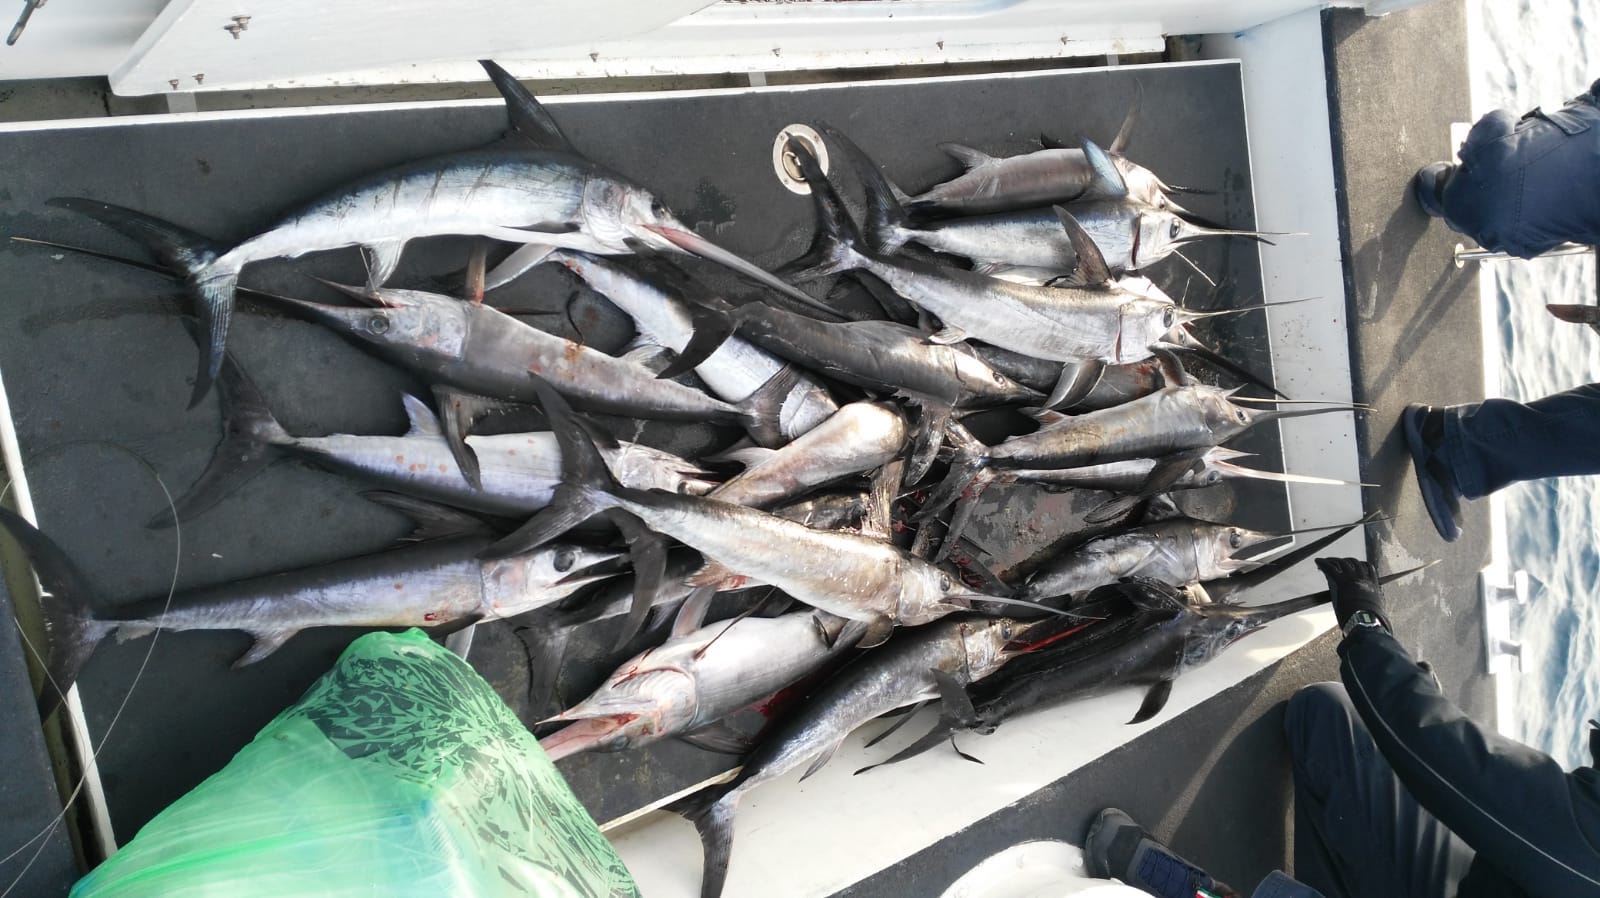 Pesce spada pescato illegalmente. Sequestrati 30 piccoli esemplari